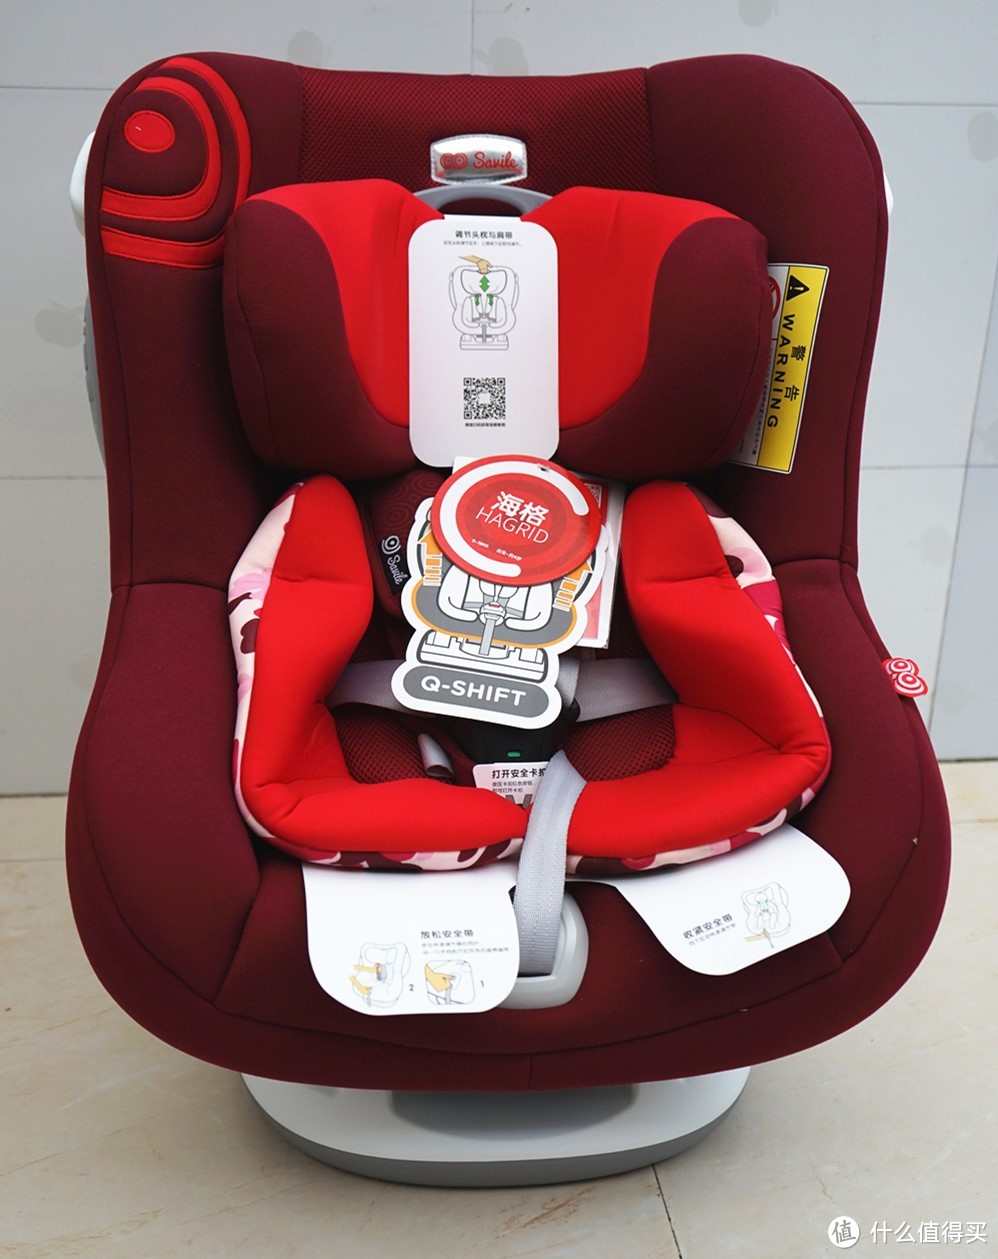 大厂出品、高端品质--SAVILE猫头鹰海格儿童安全座椅评测